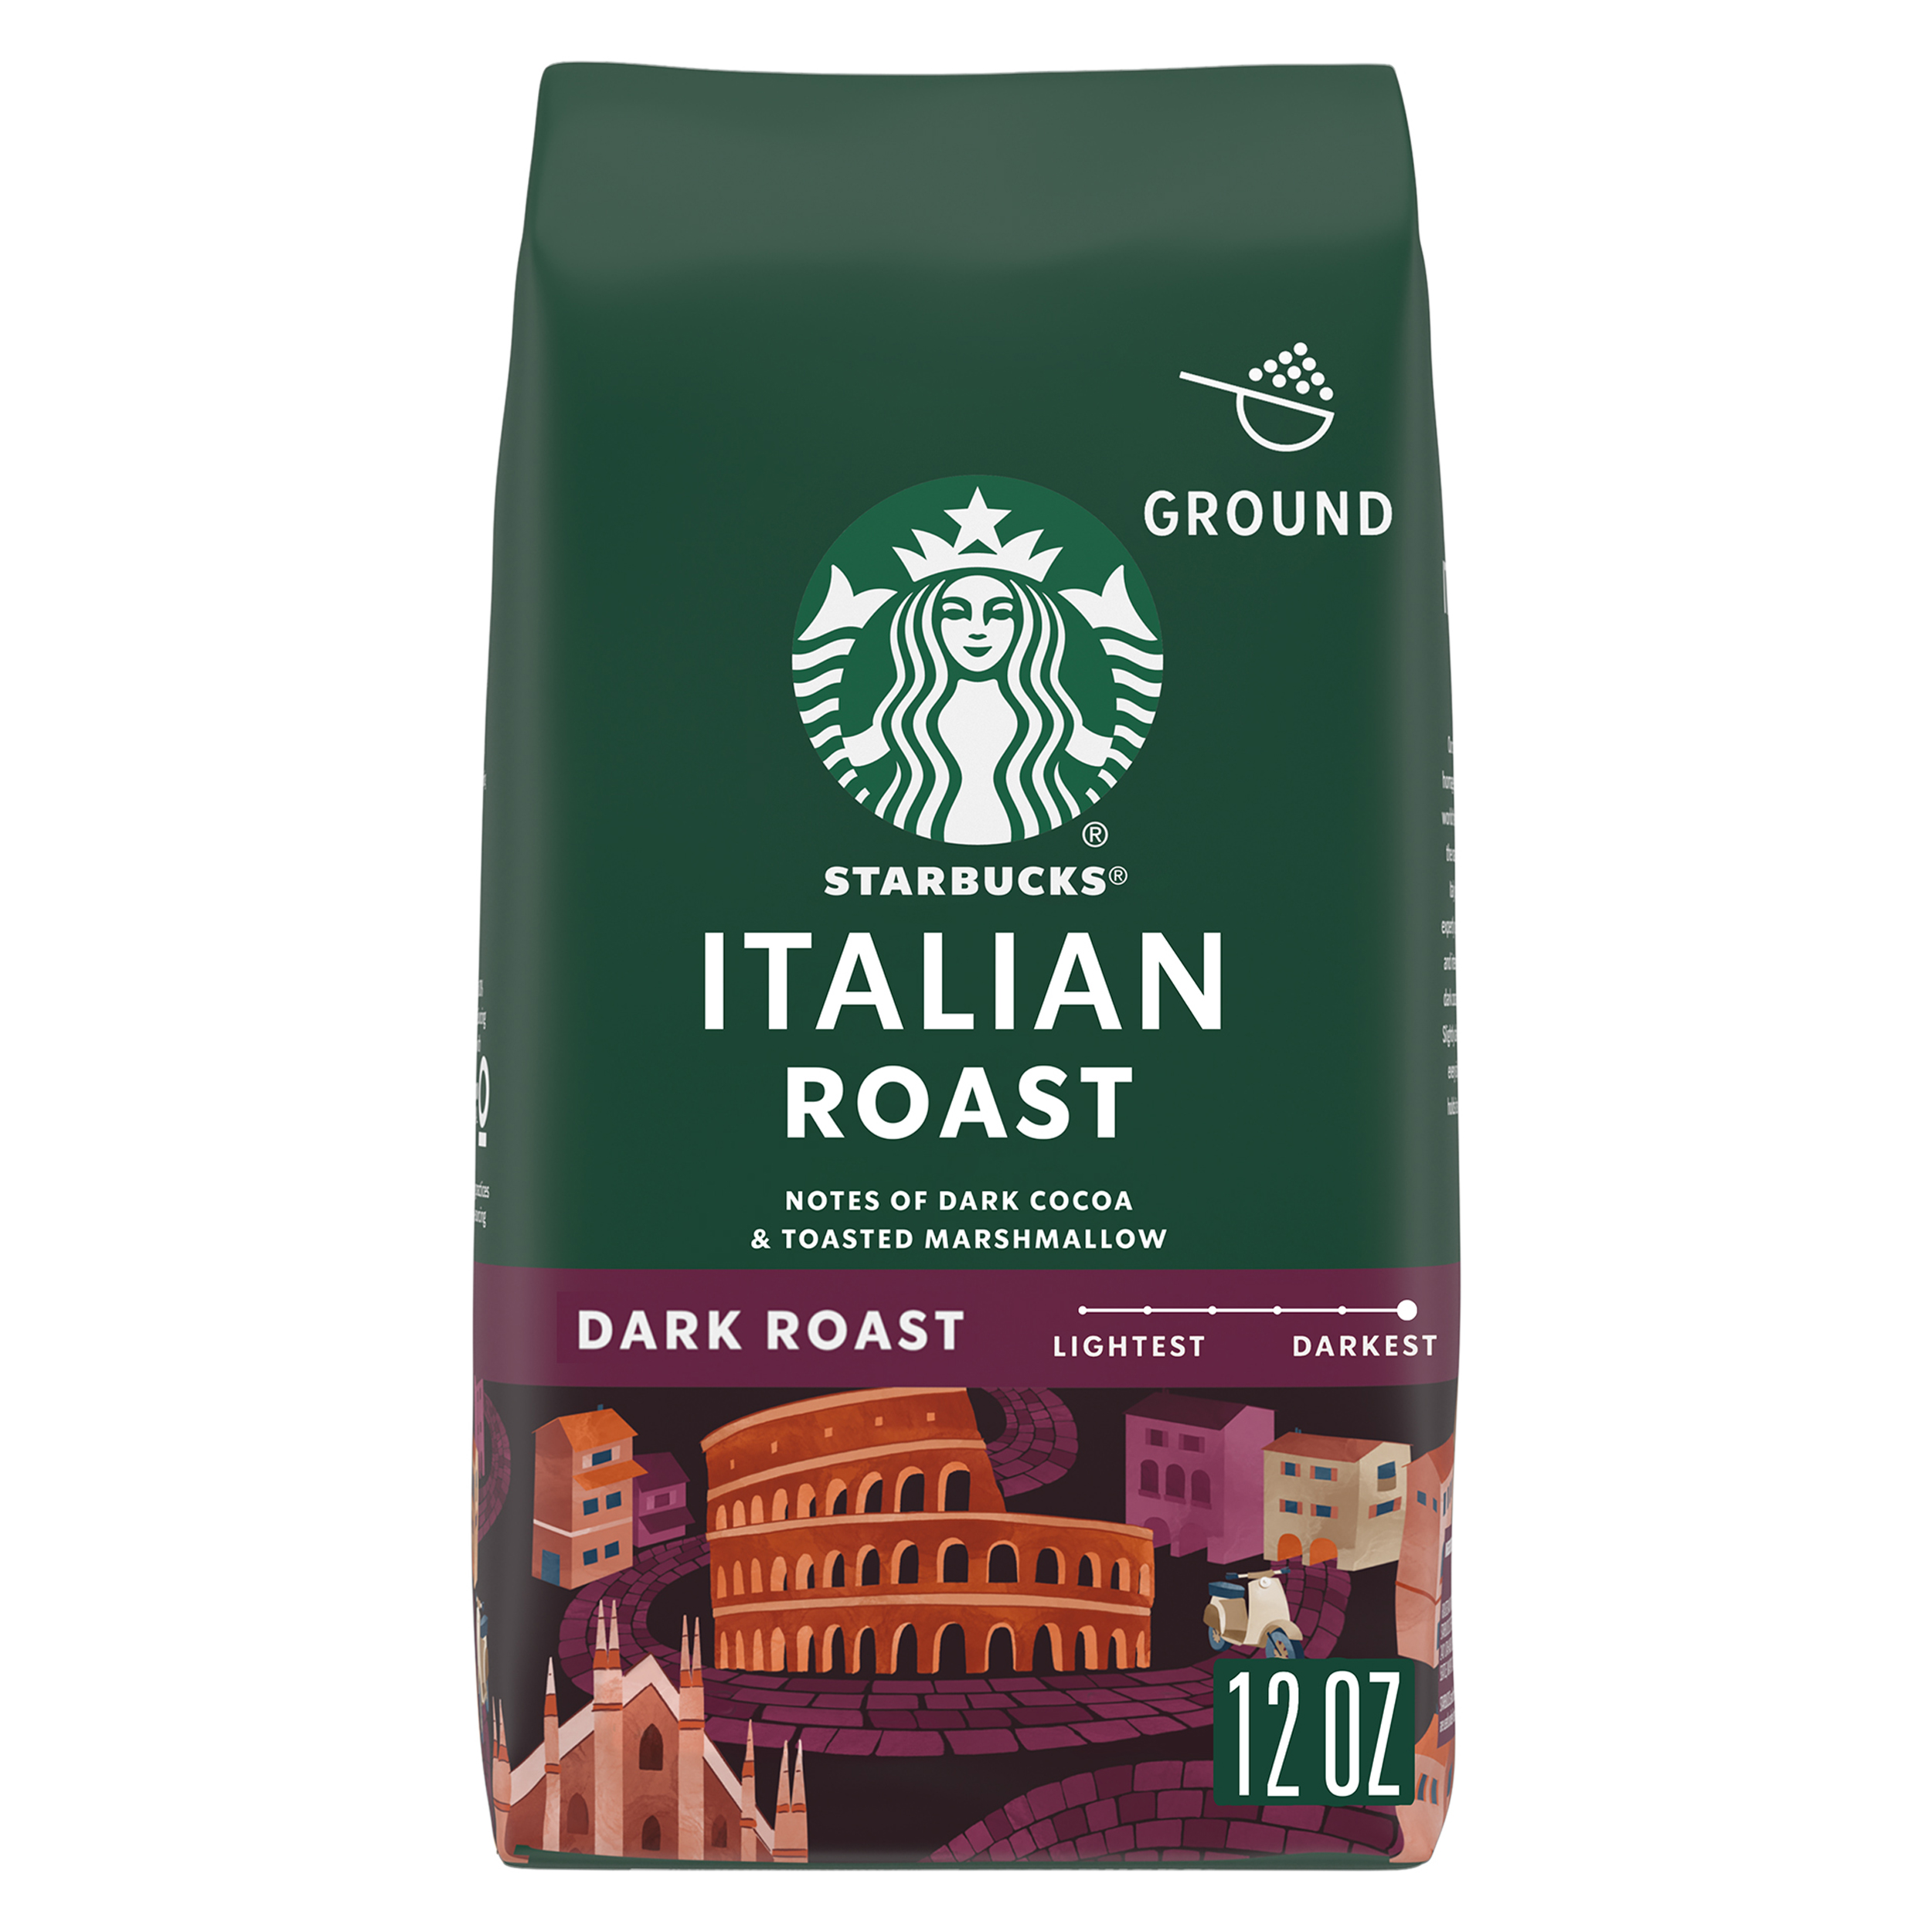 Starbucks Italian Roast, Ground Coffee, Dark Roast, 12 oz - image 1 of 8